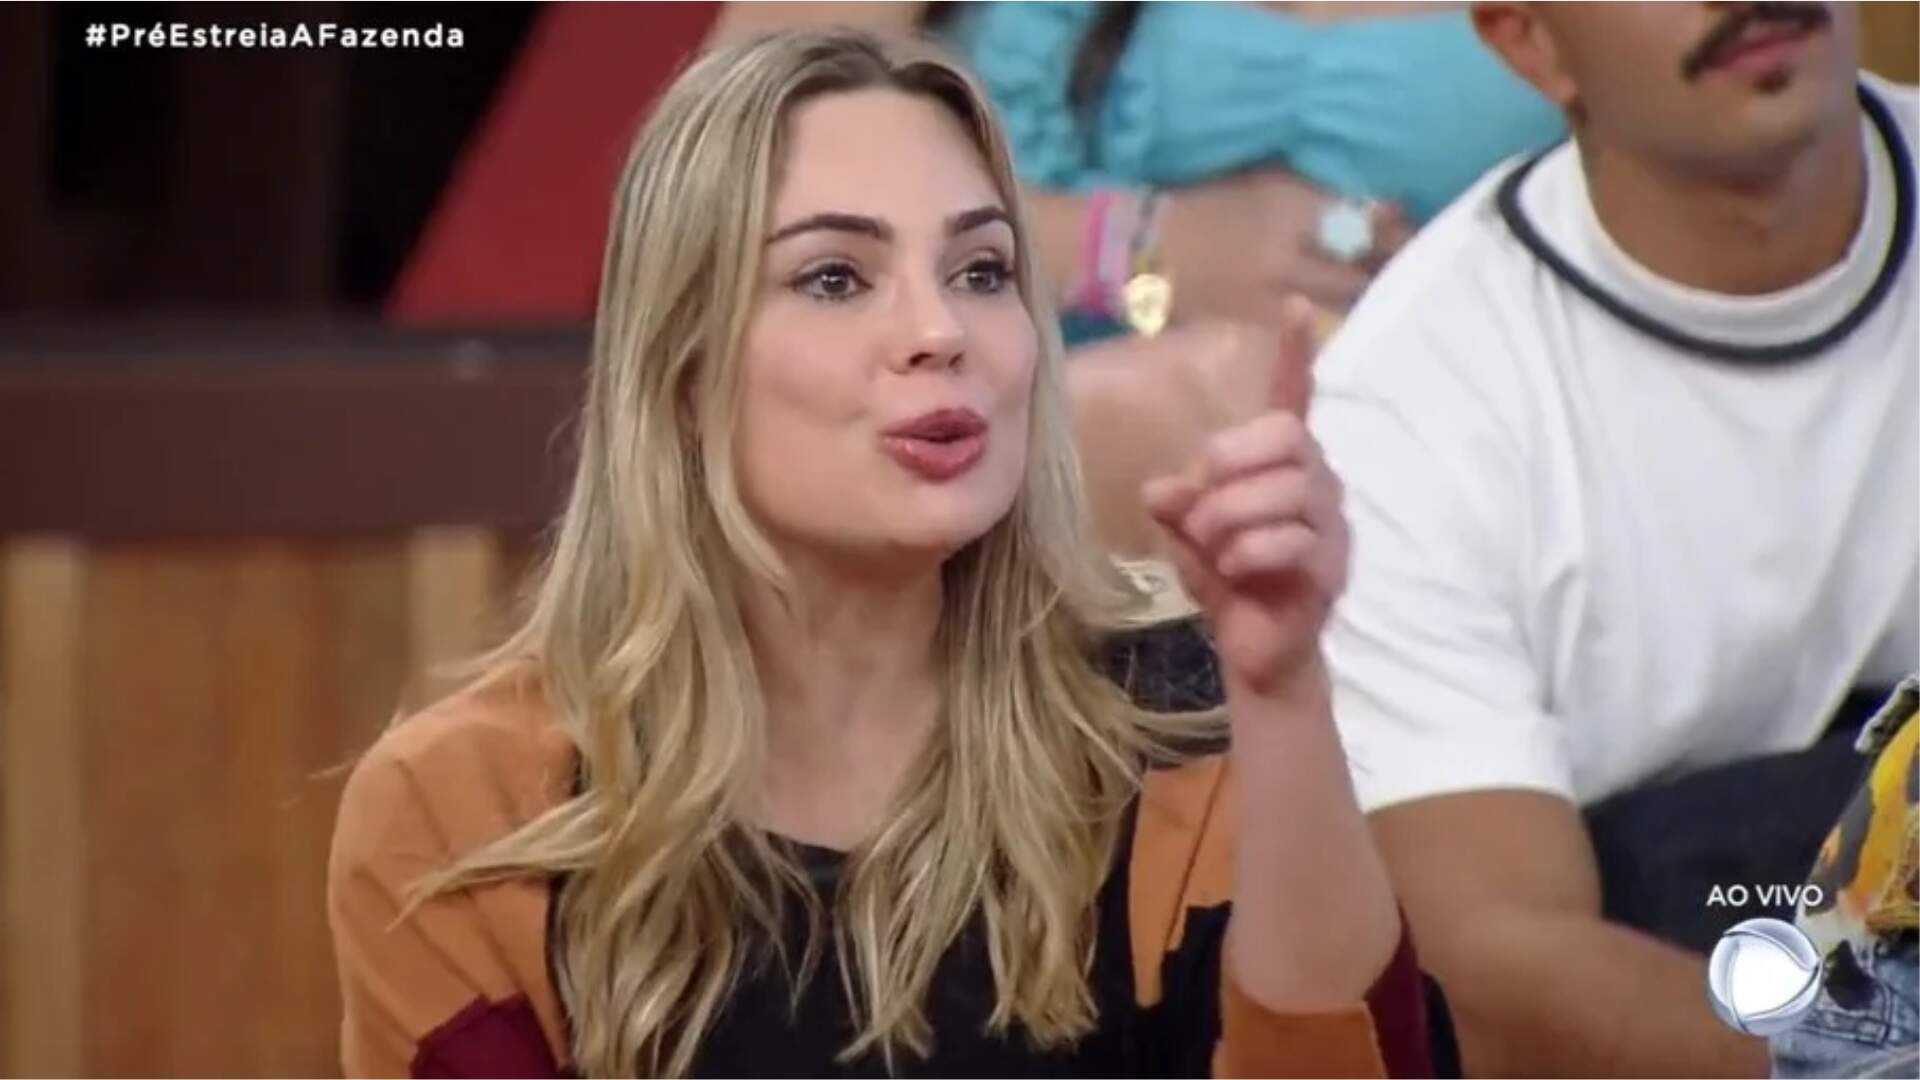 A Fazenda 15: Rachel Sheherazade se defende de polêmica envolvendo reality show - Metropolitana FM